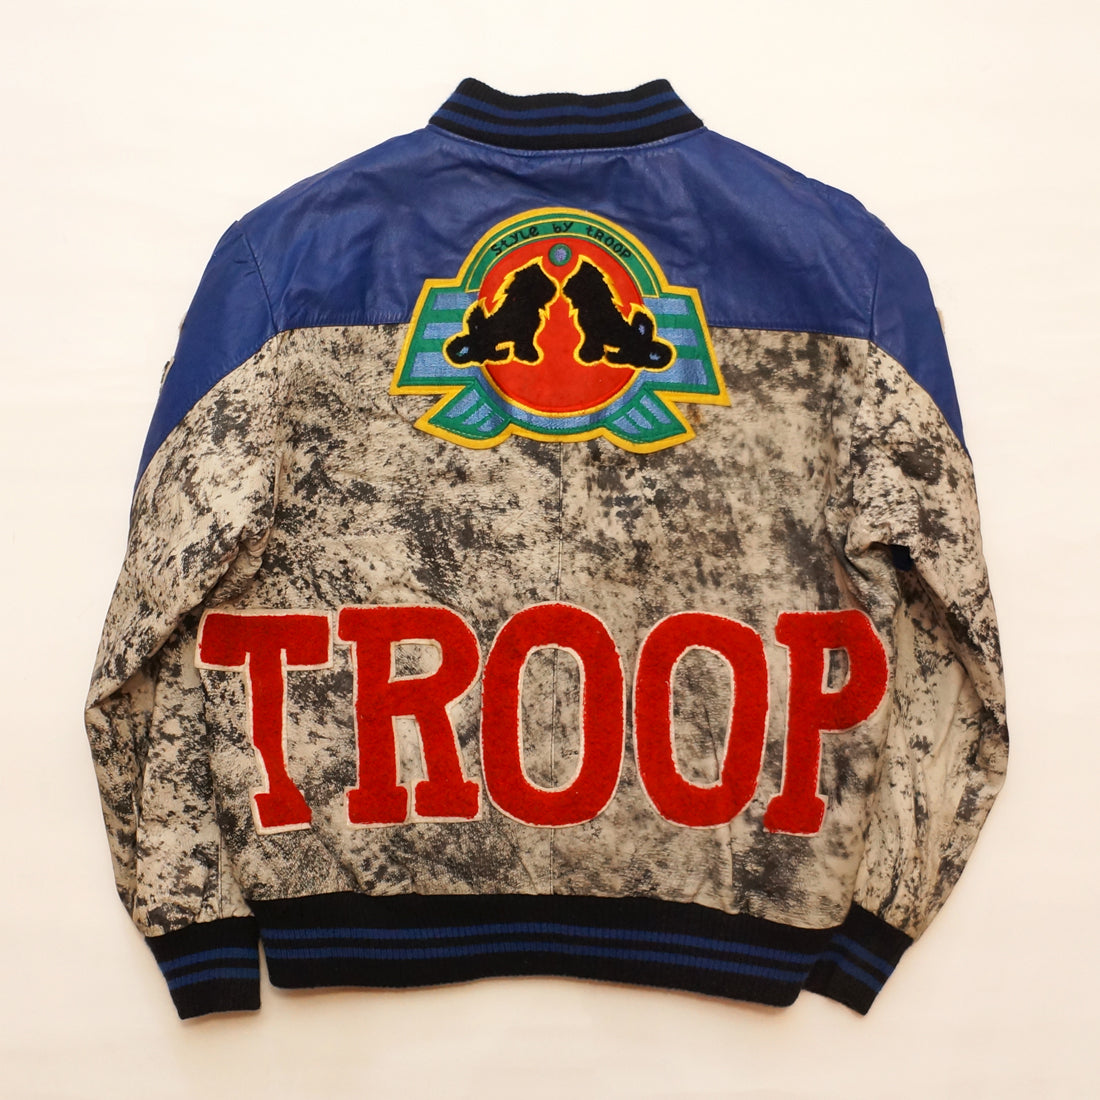 Vintage 1980's "Style By Troop" Blue & Black Leather TROOP Jacket